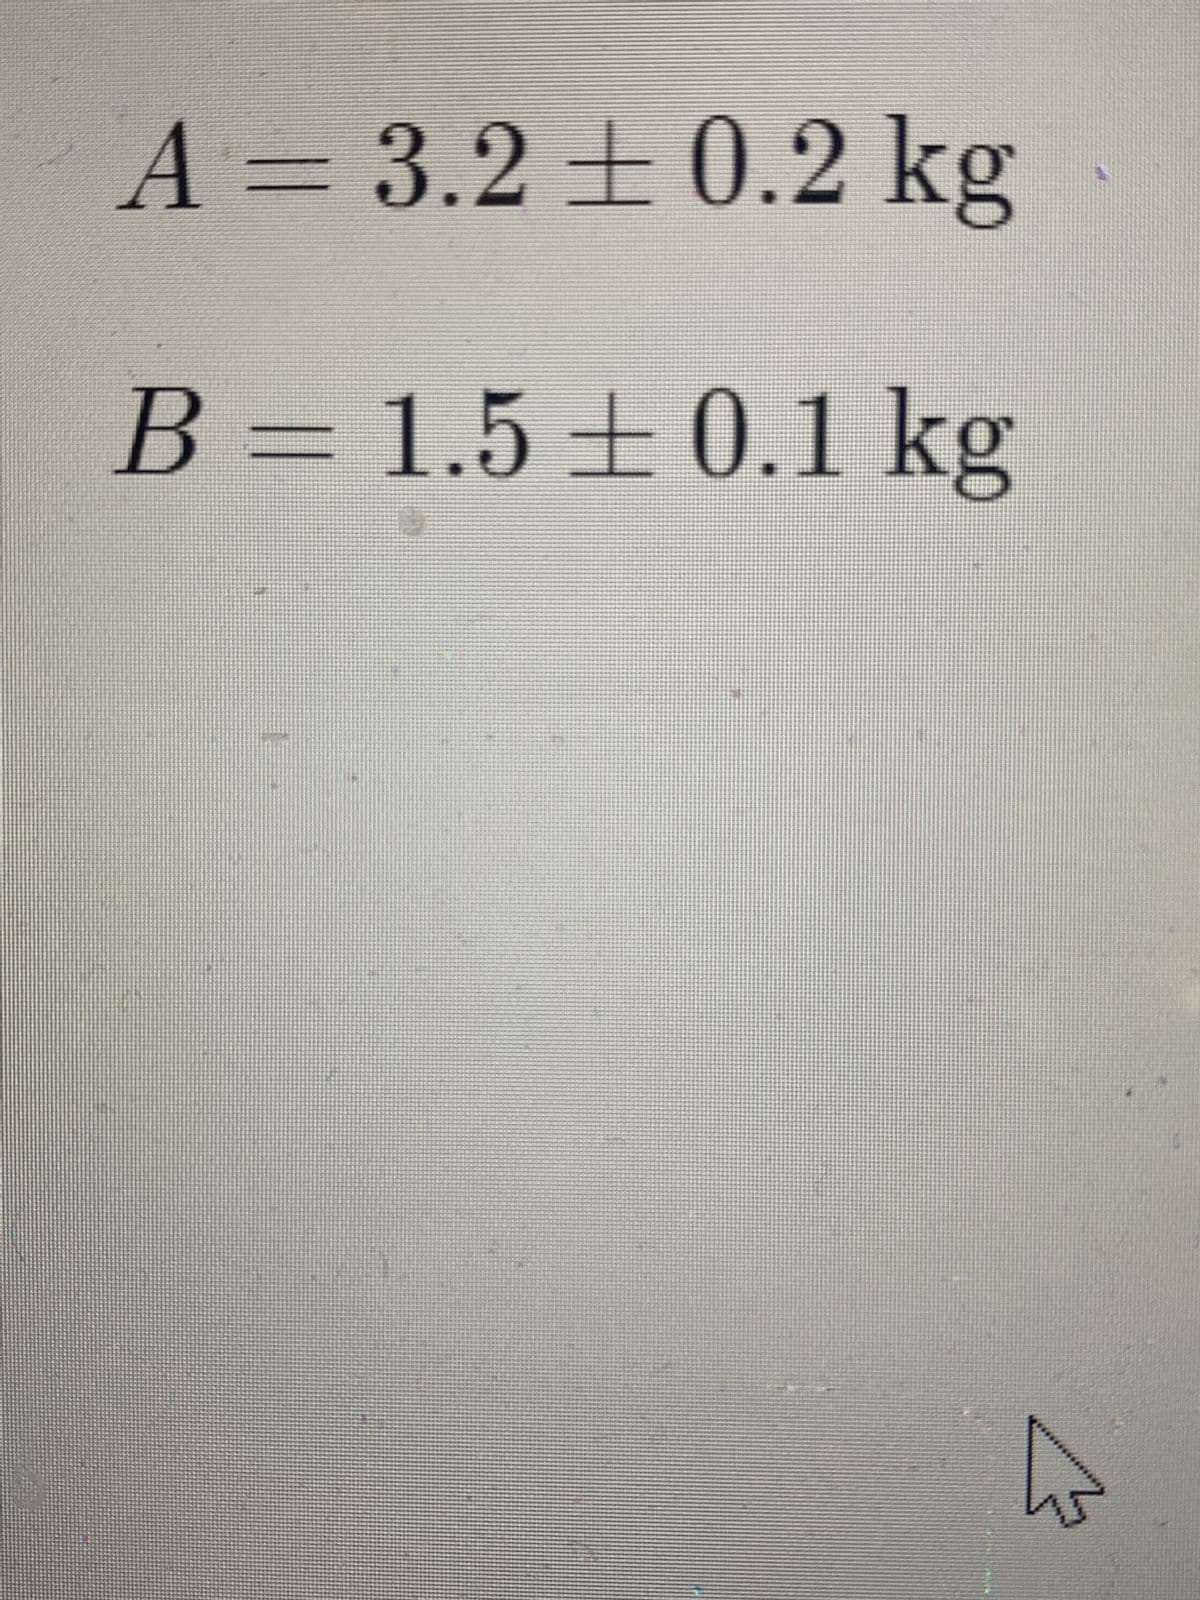 A = 3.2 ± 0.2 kg
B = 1.5±0.1 kg
A
ho